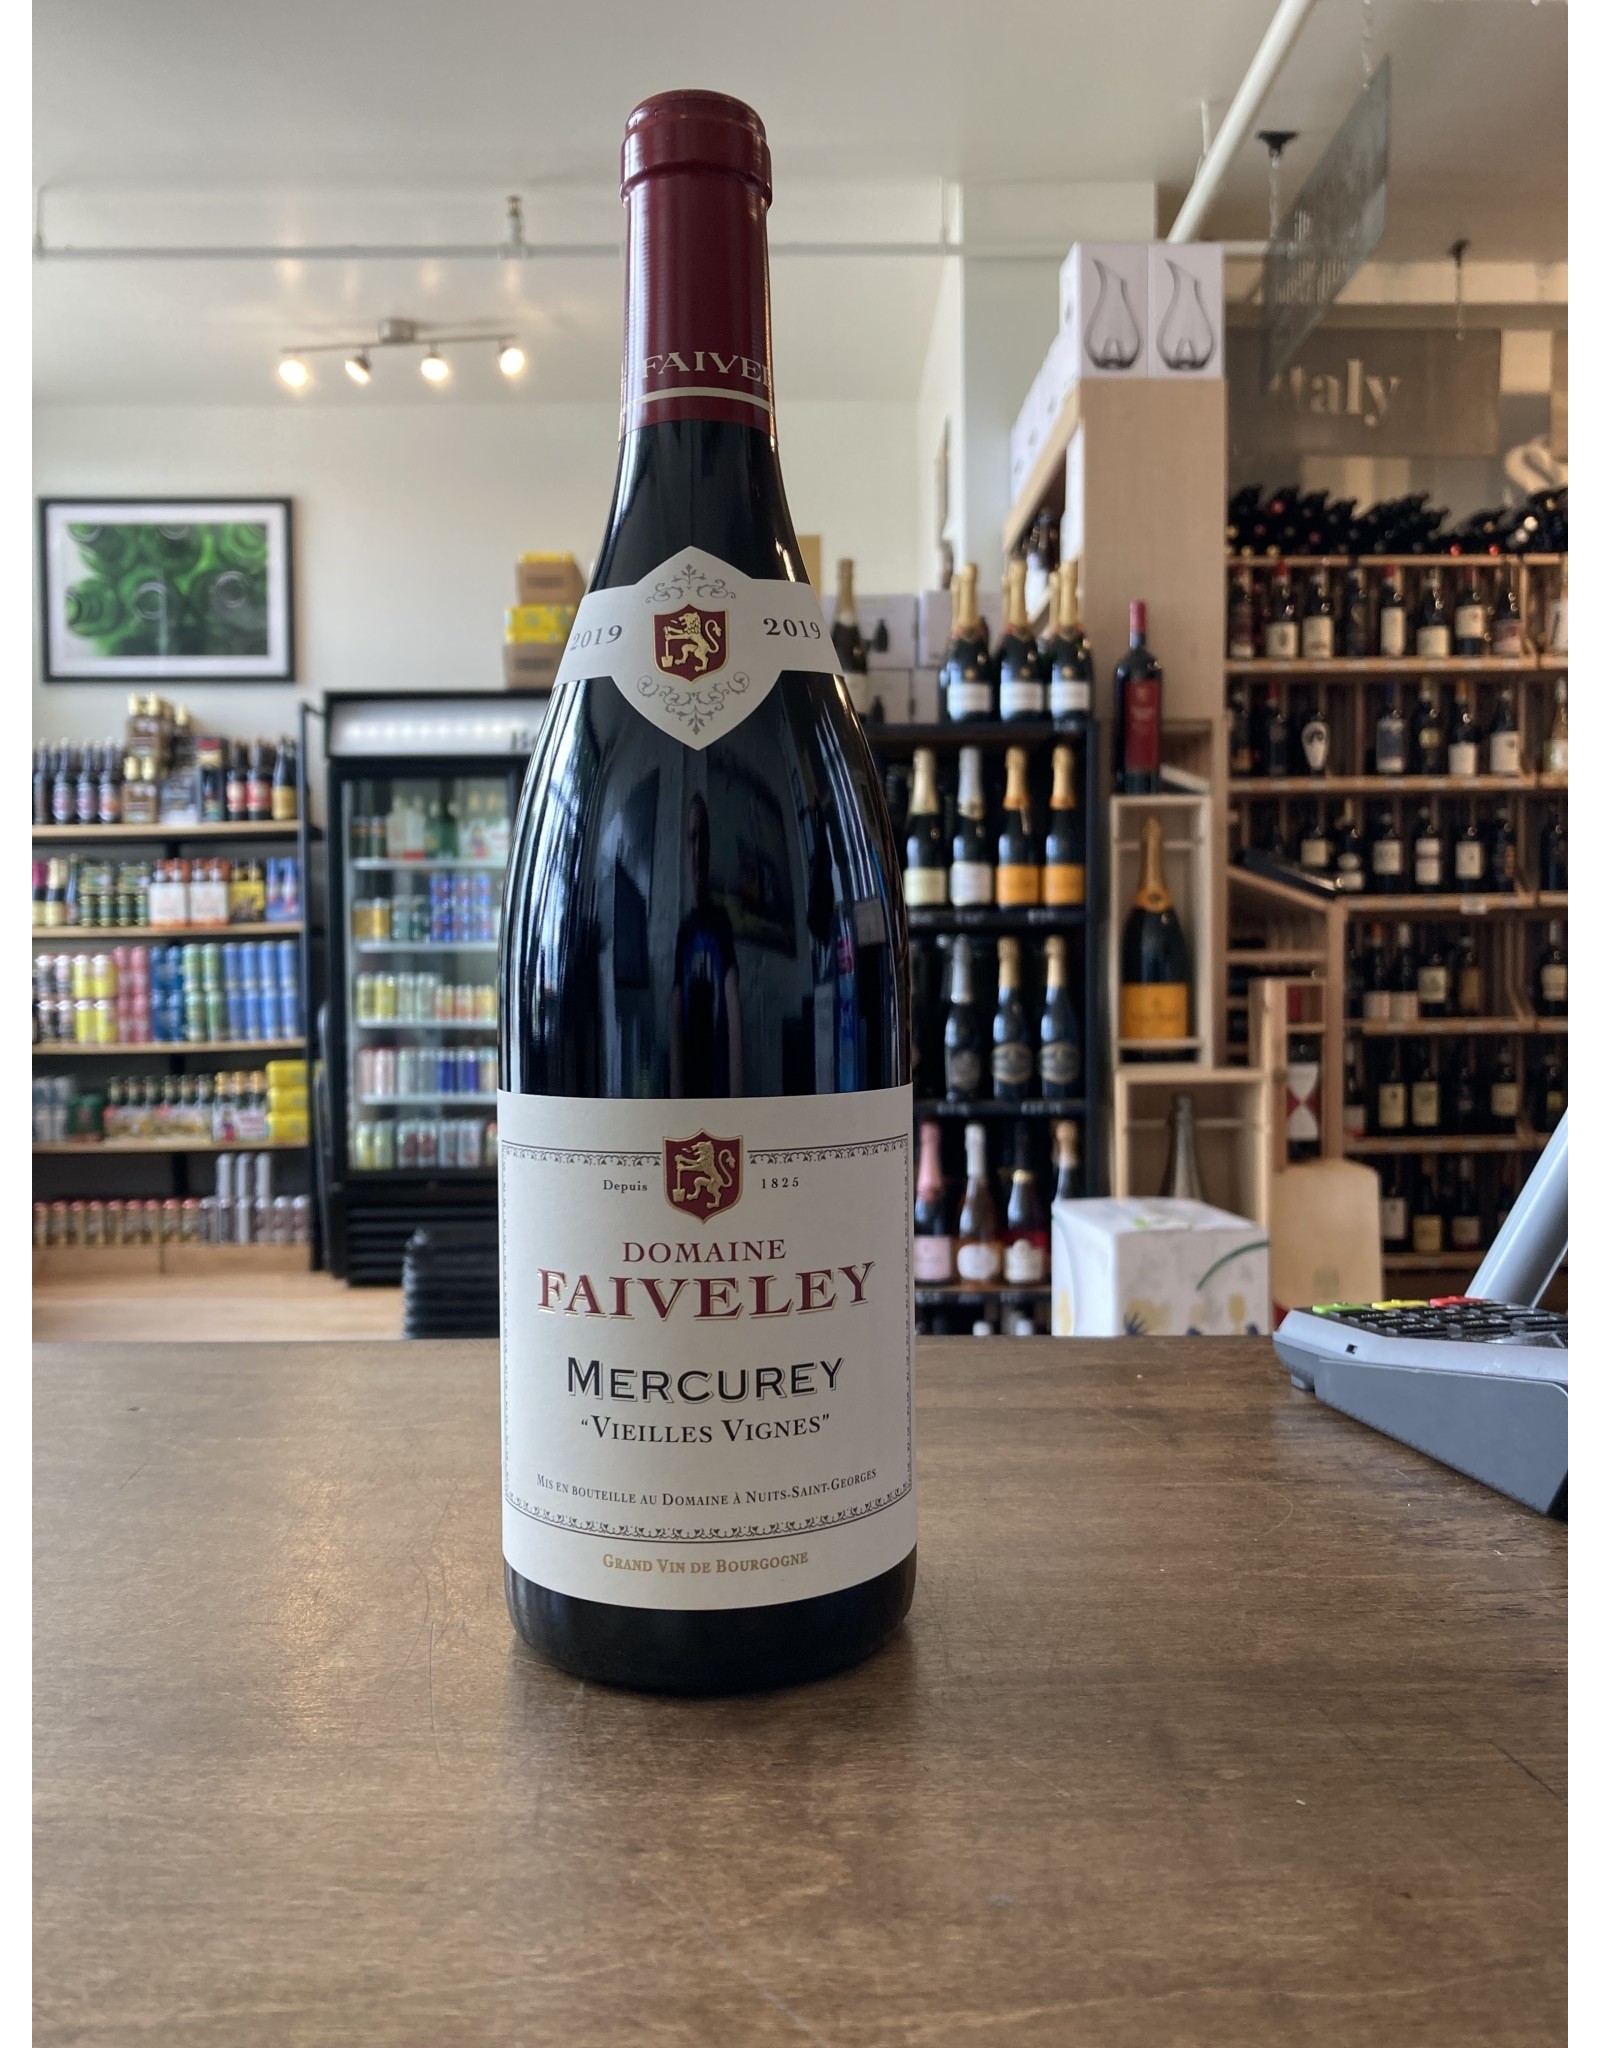 Domaine Faiveley Mercurey "Vieilles Vignes" 2019